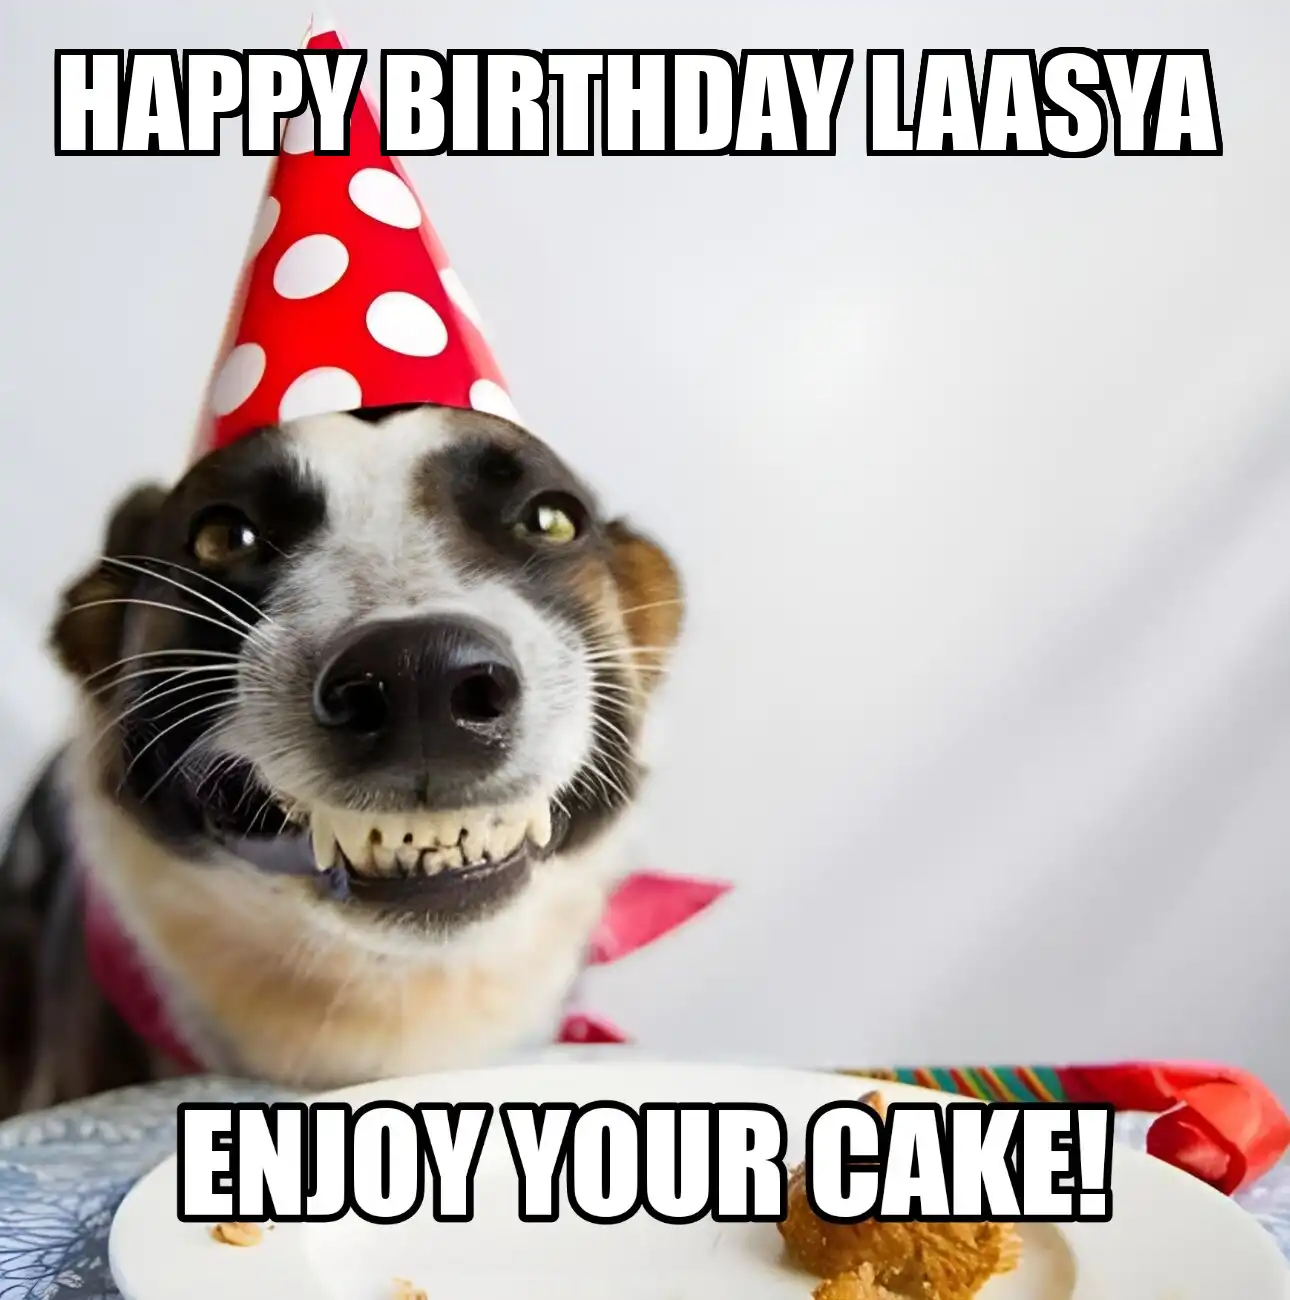 Happy Birthday Laasya Enjoy Your Cake Dog Meme